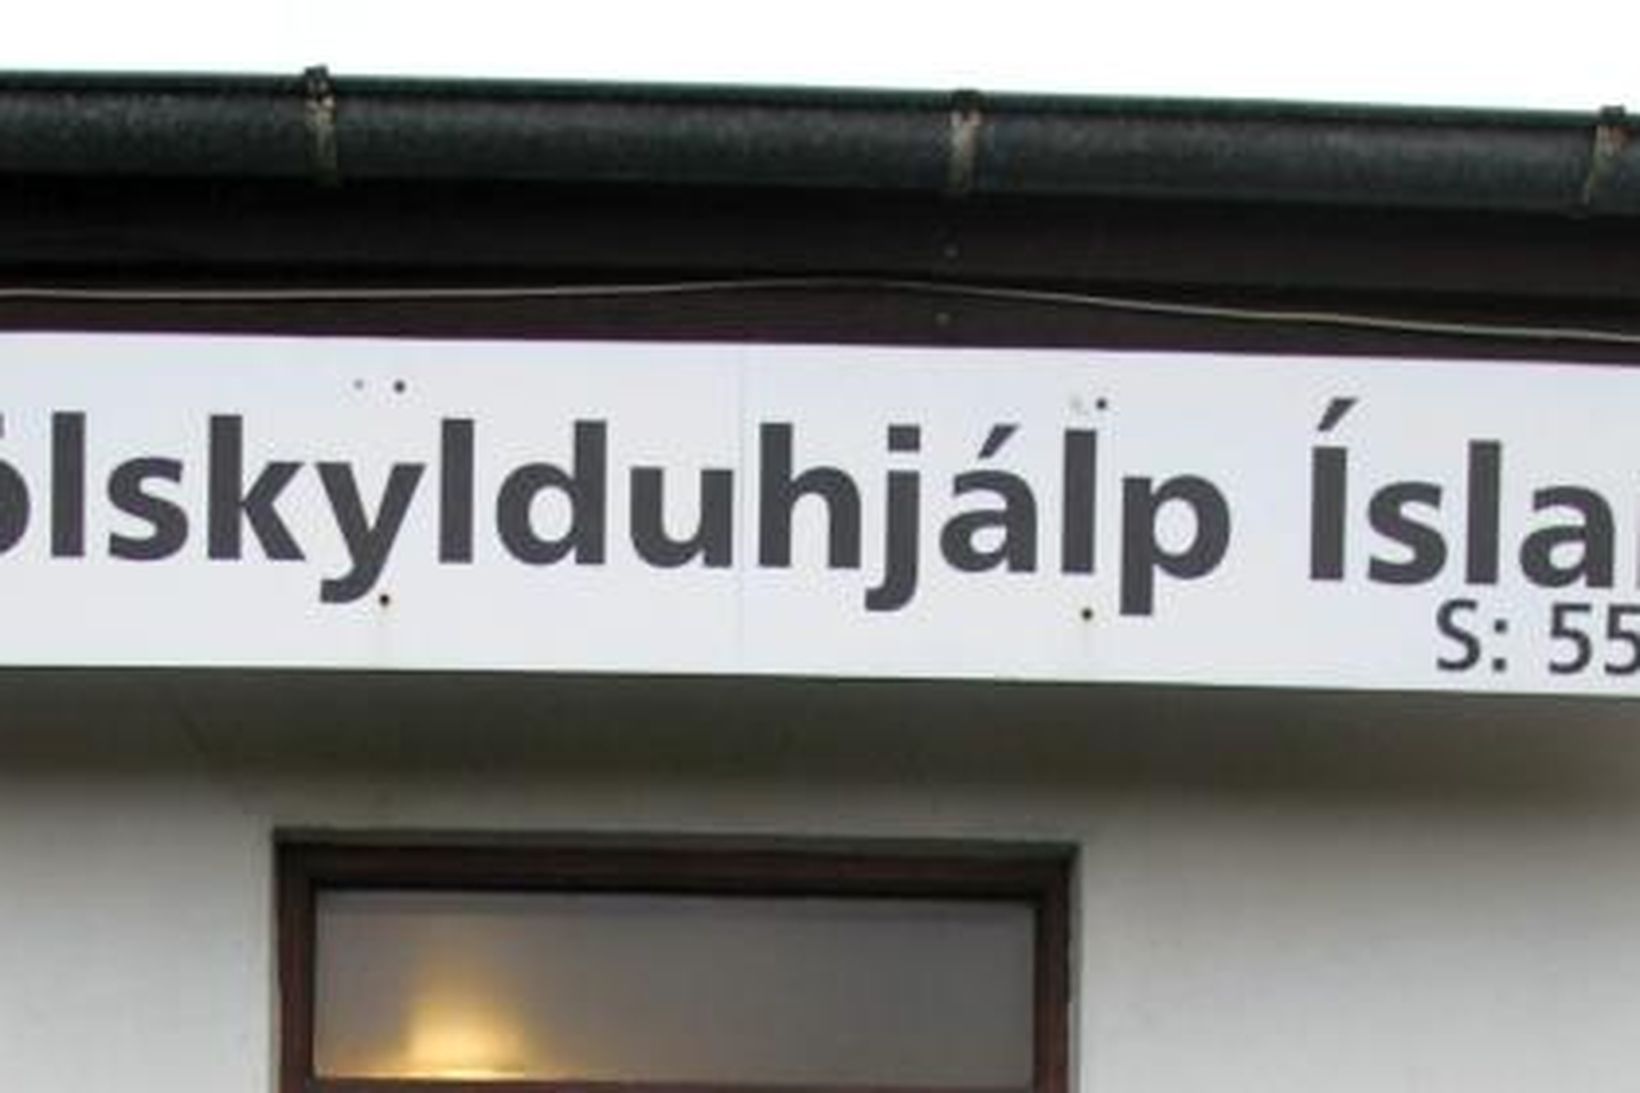 Fjölskylduhjálp Íslands mismunandi reglur fyrir fólk eftir þjóðerni.